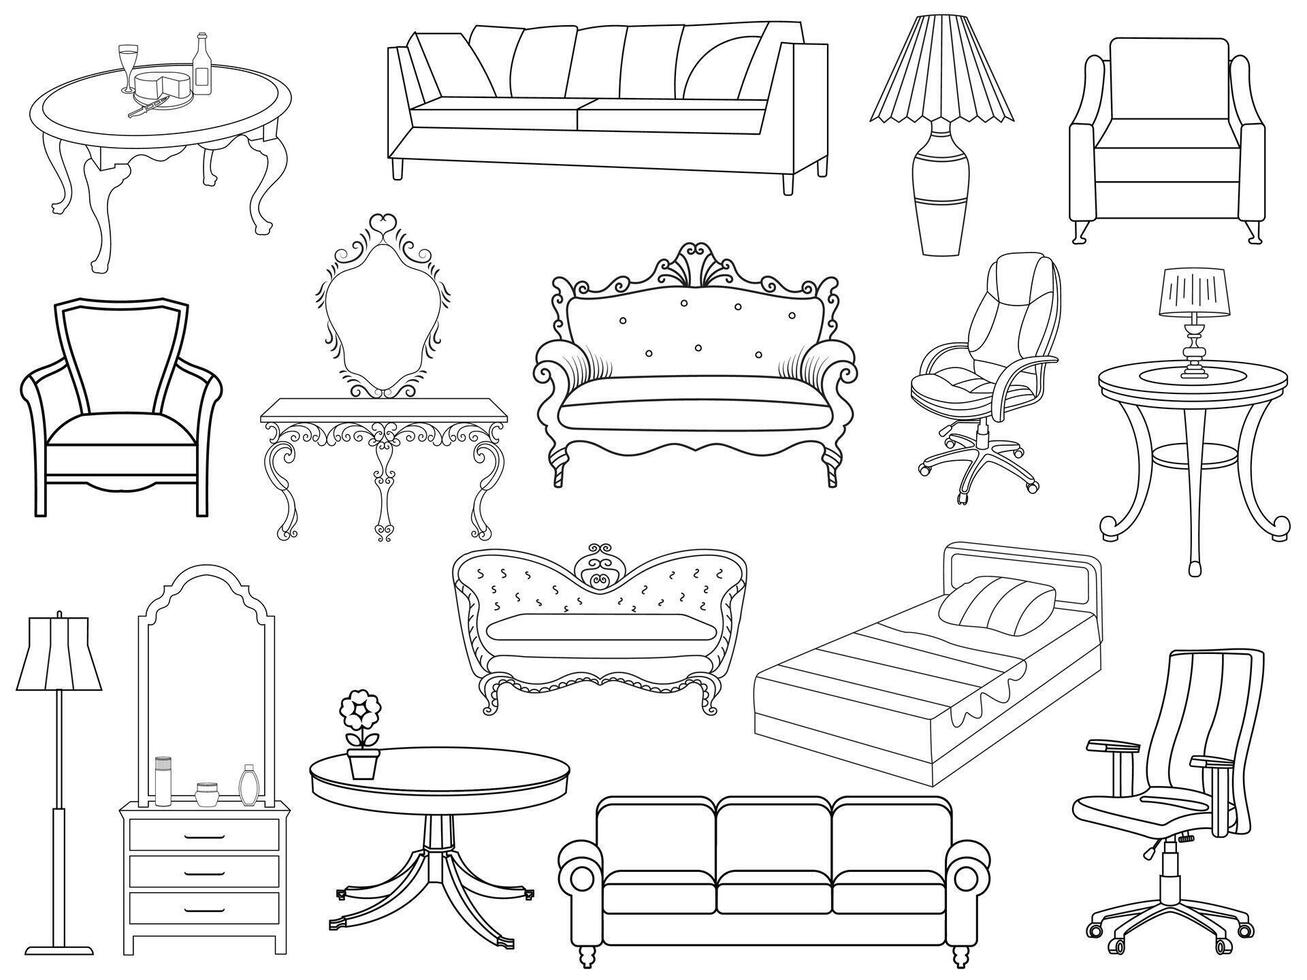 verzameling van elegant modern meubilair en huis interieur decoraties van trendy. keuken, slaapkamer, sofa tafel, boekenkast kast, stoel, matras, lampen, ladder vector illustraties.